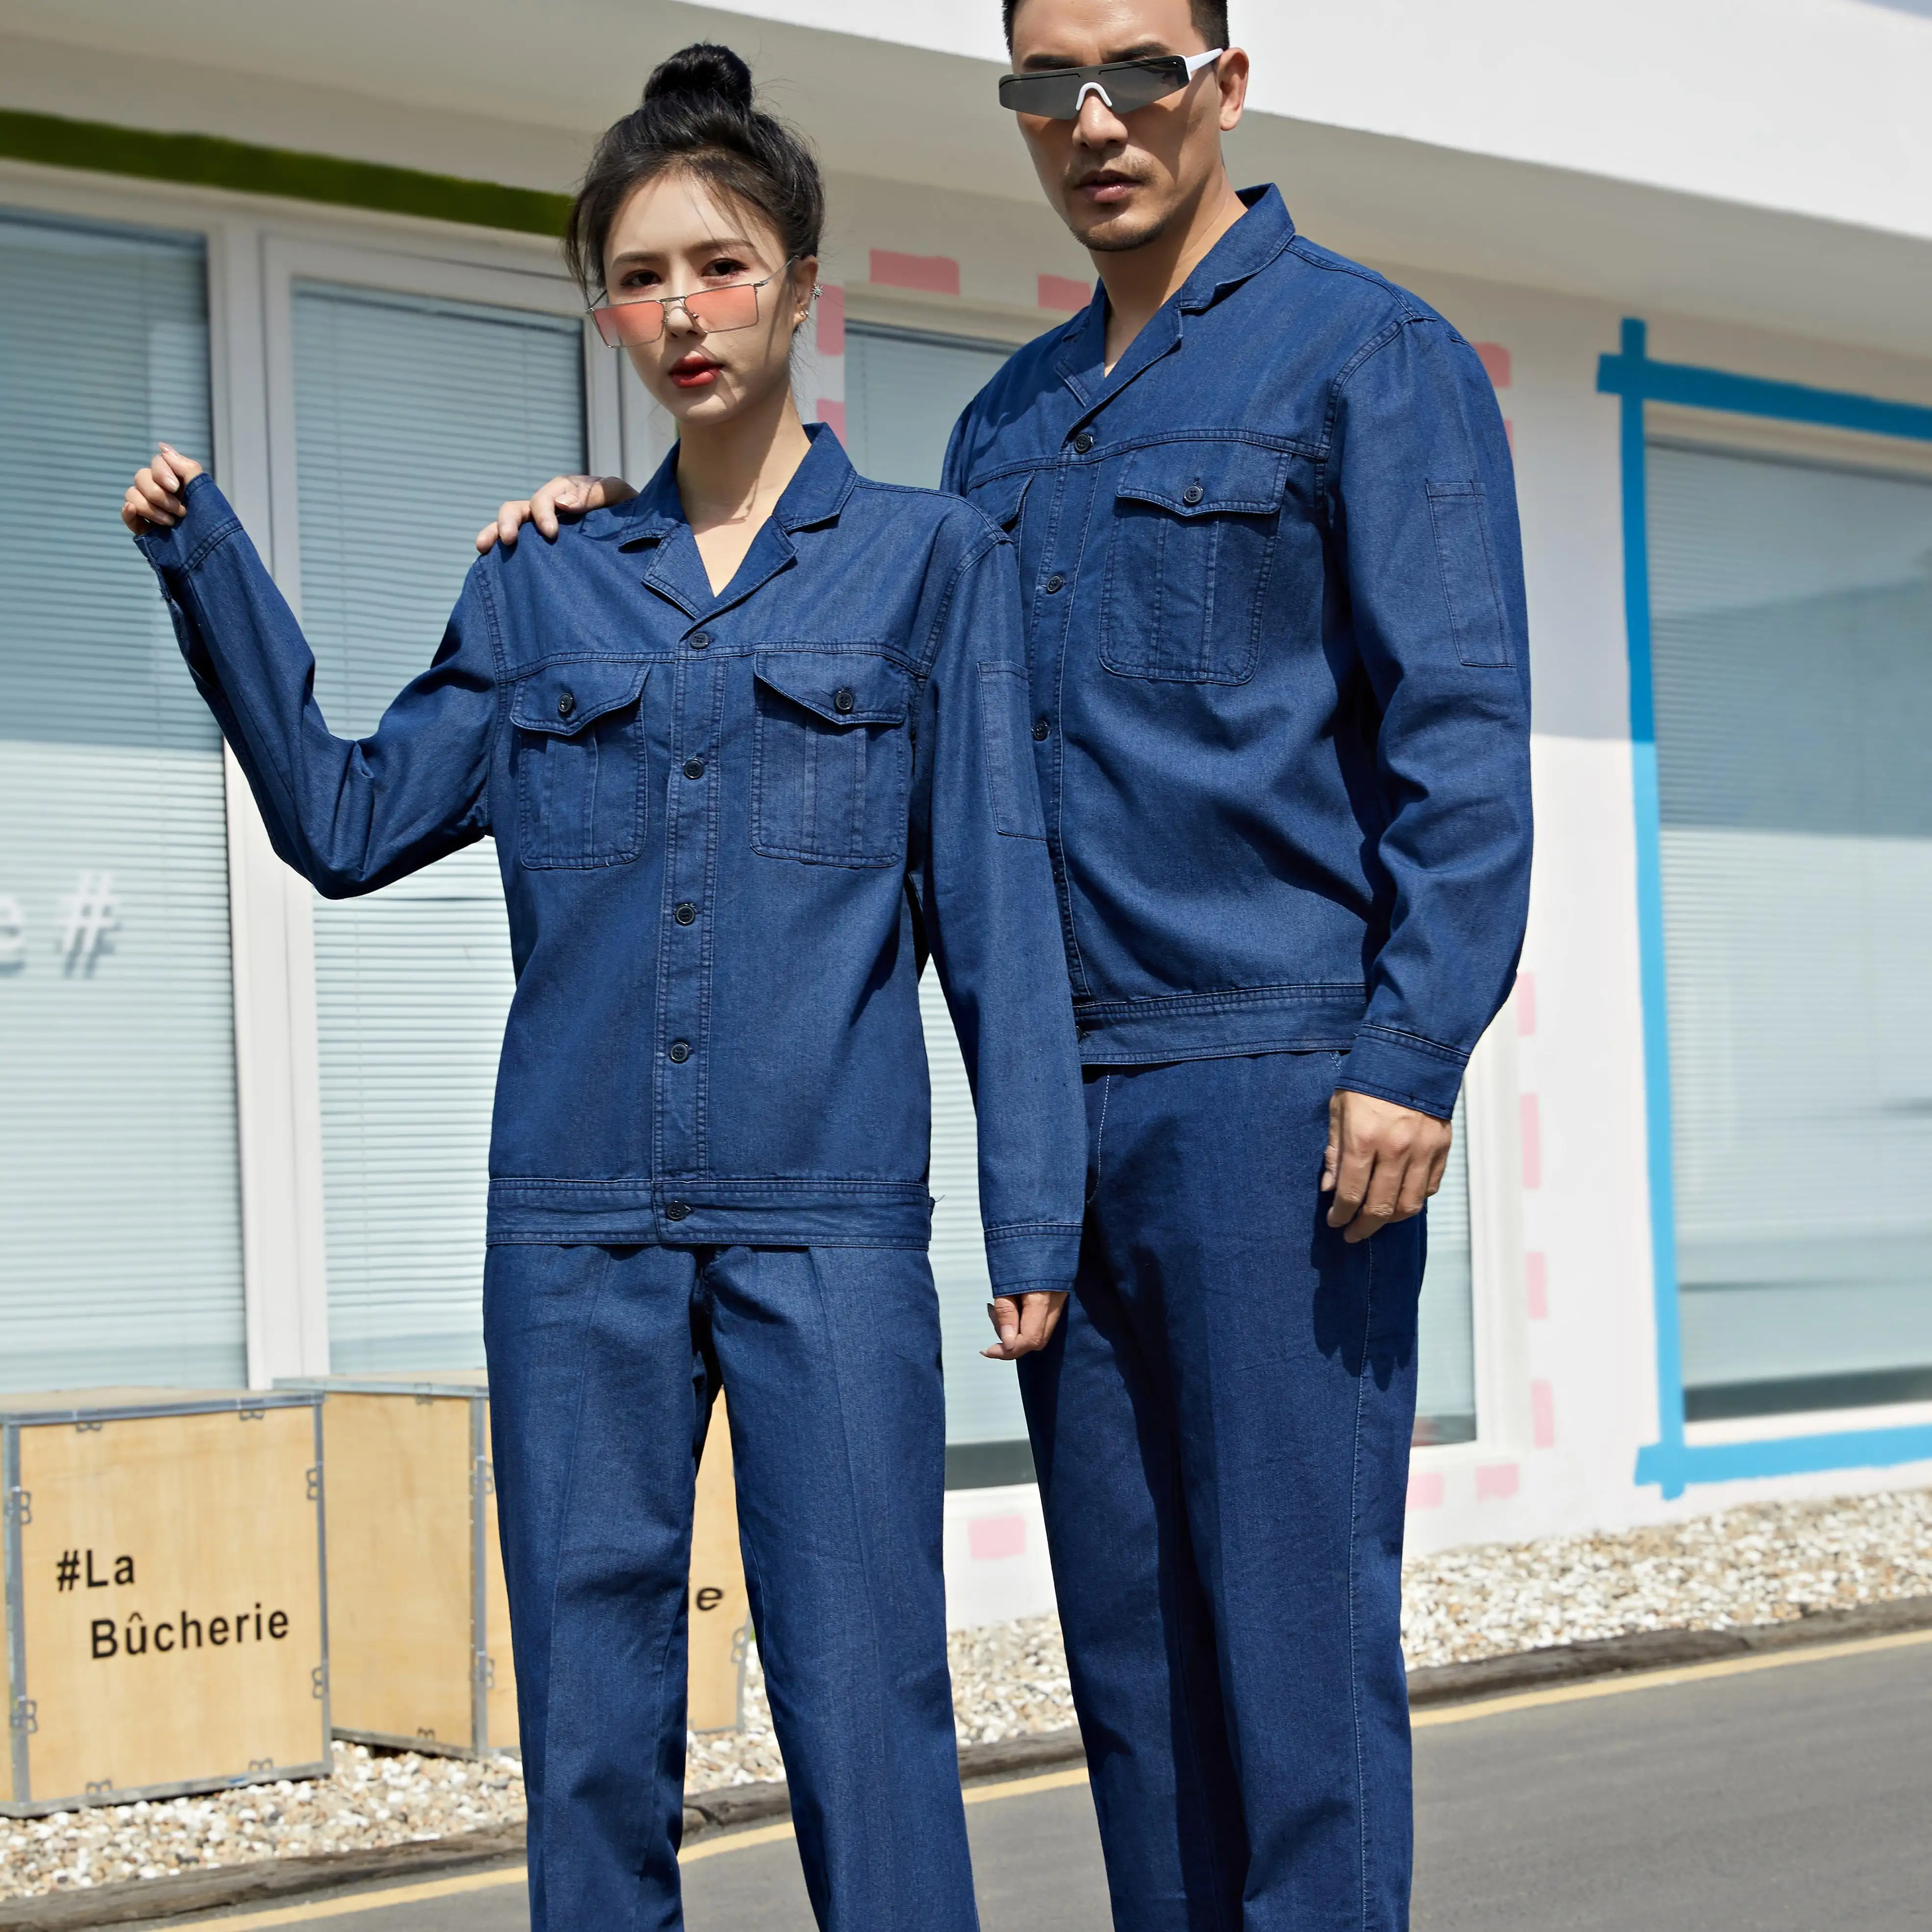 Uniforme de fábrica unisex para trabalho, uniforme de fábrica, roupa de trabalho em algodão royal azul para adultos